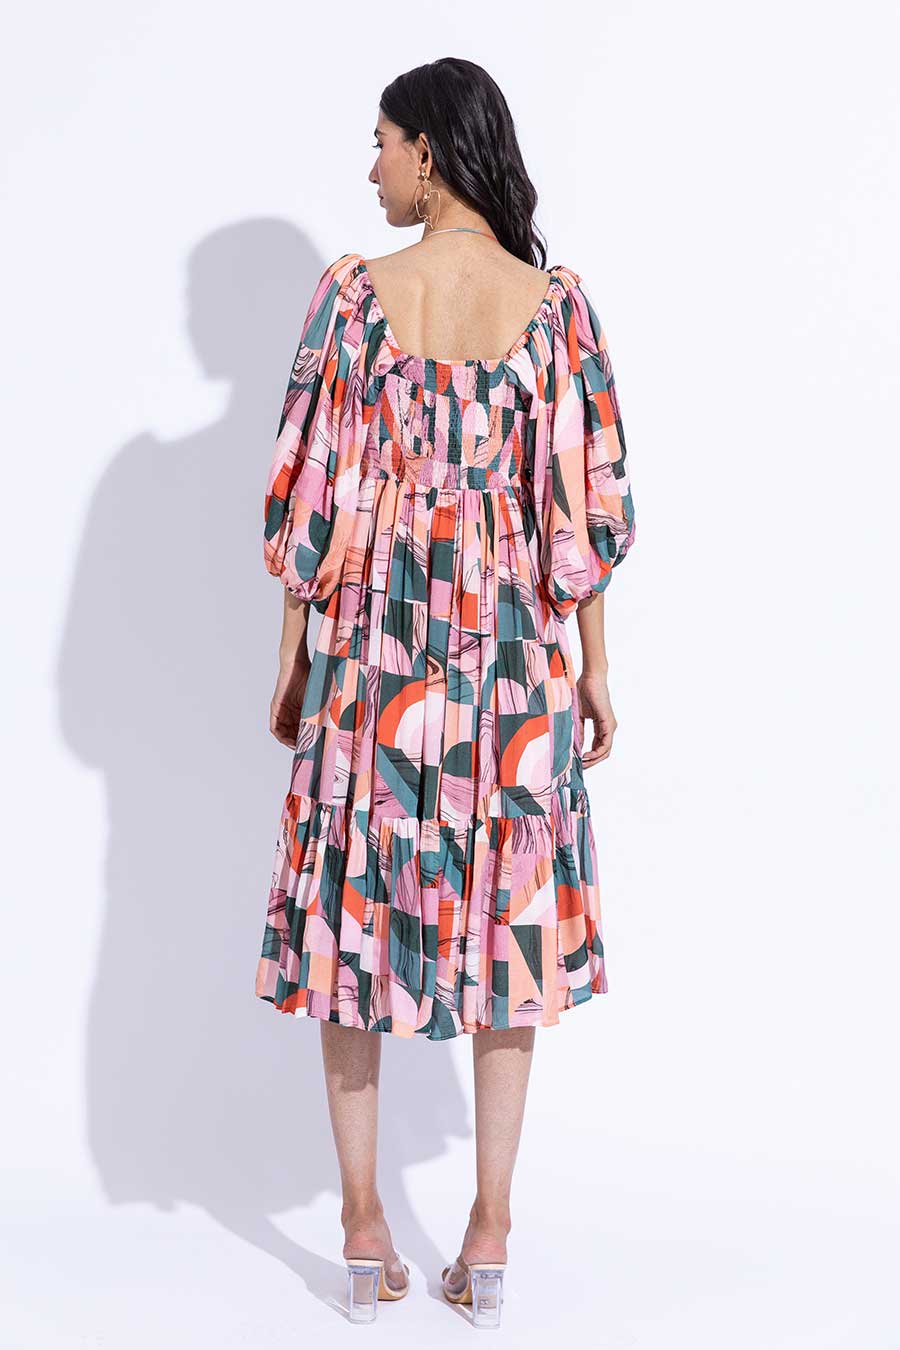 Azalea Daisy Printed Dress